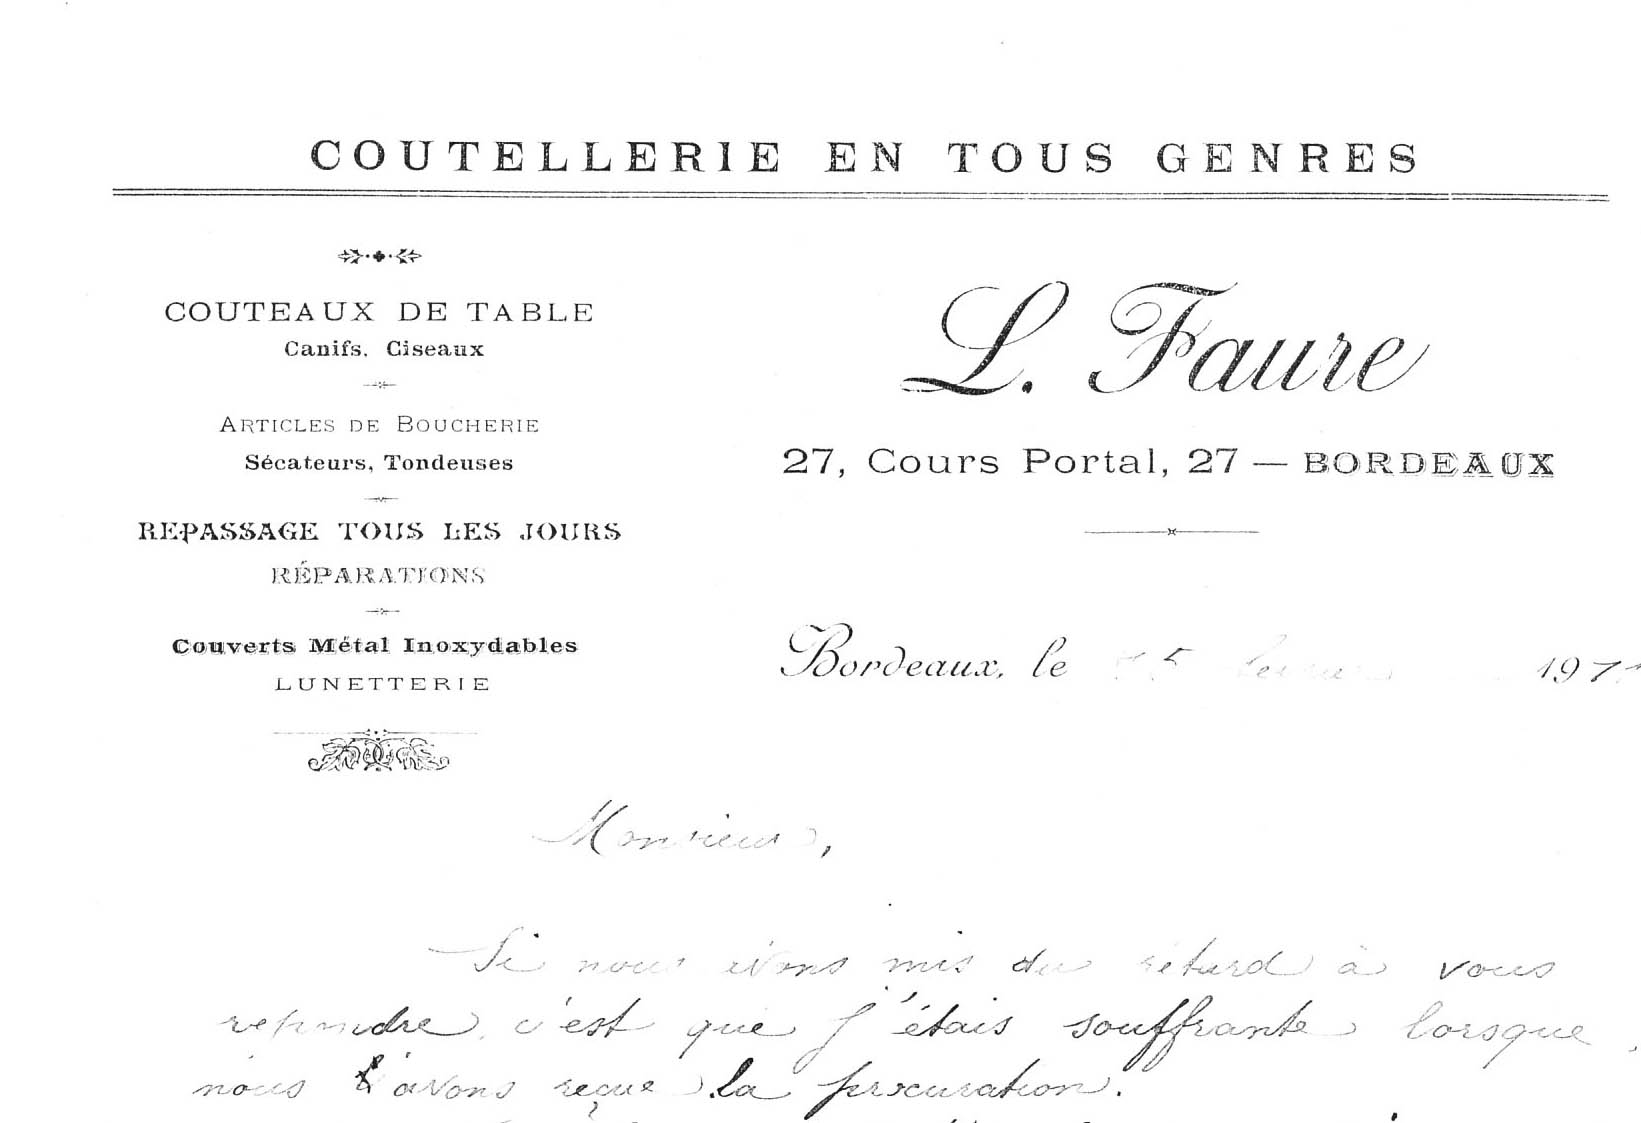 Louis FAURE, coutelier